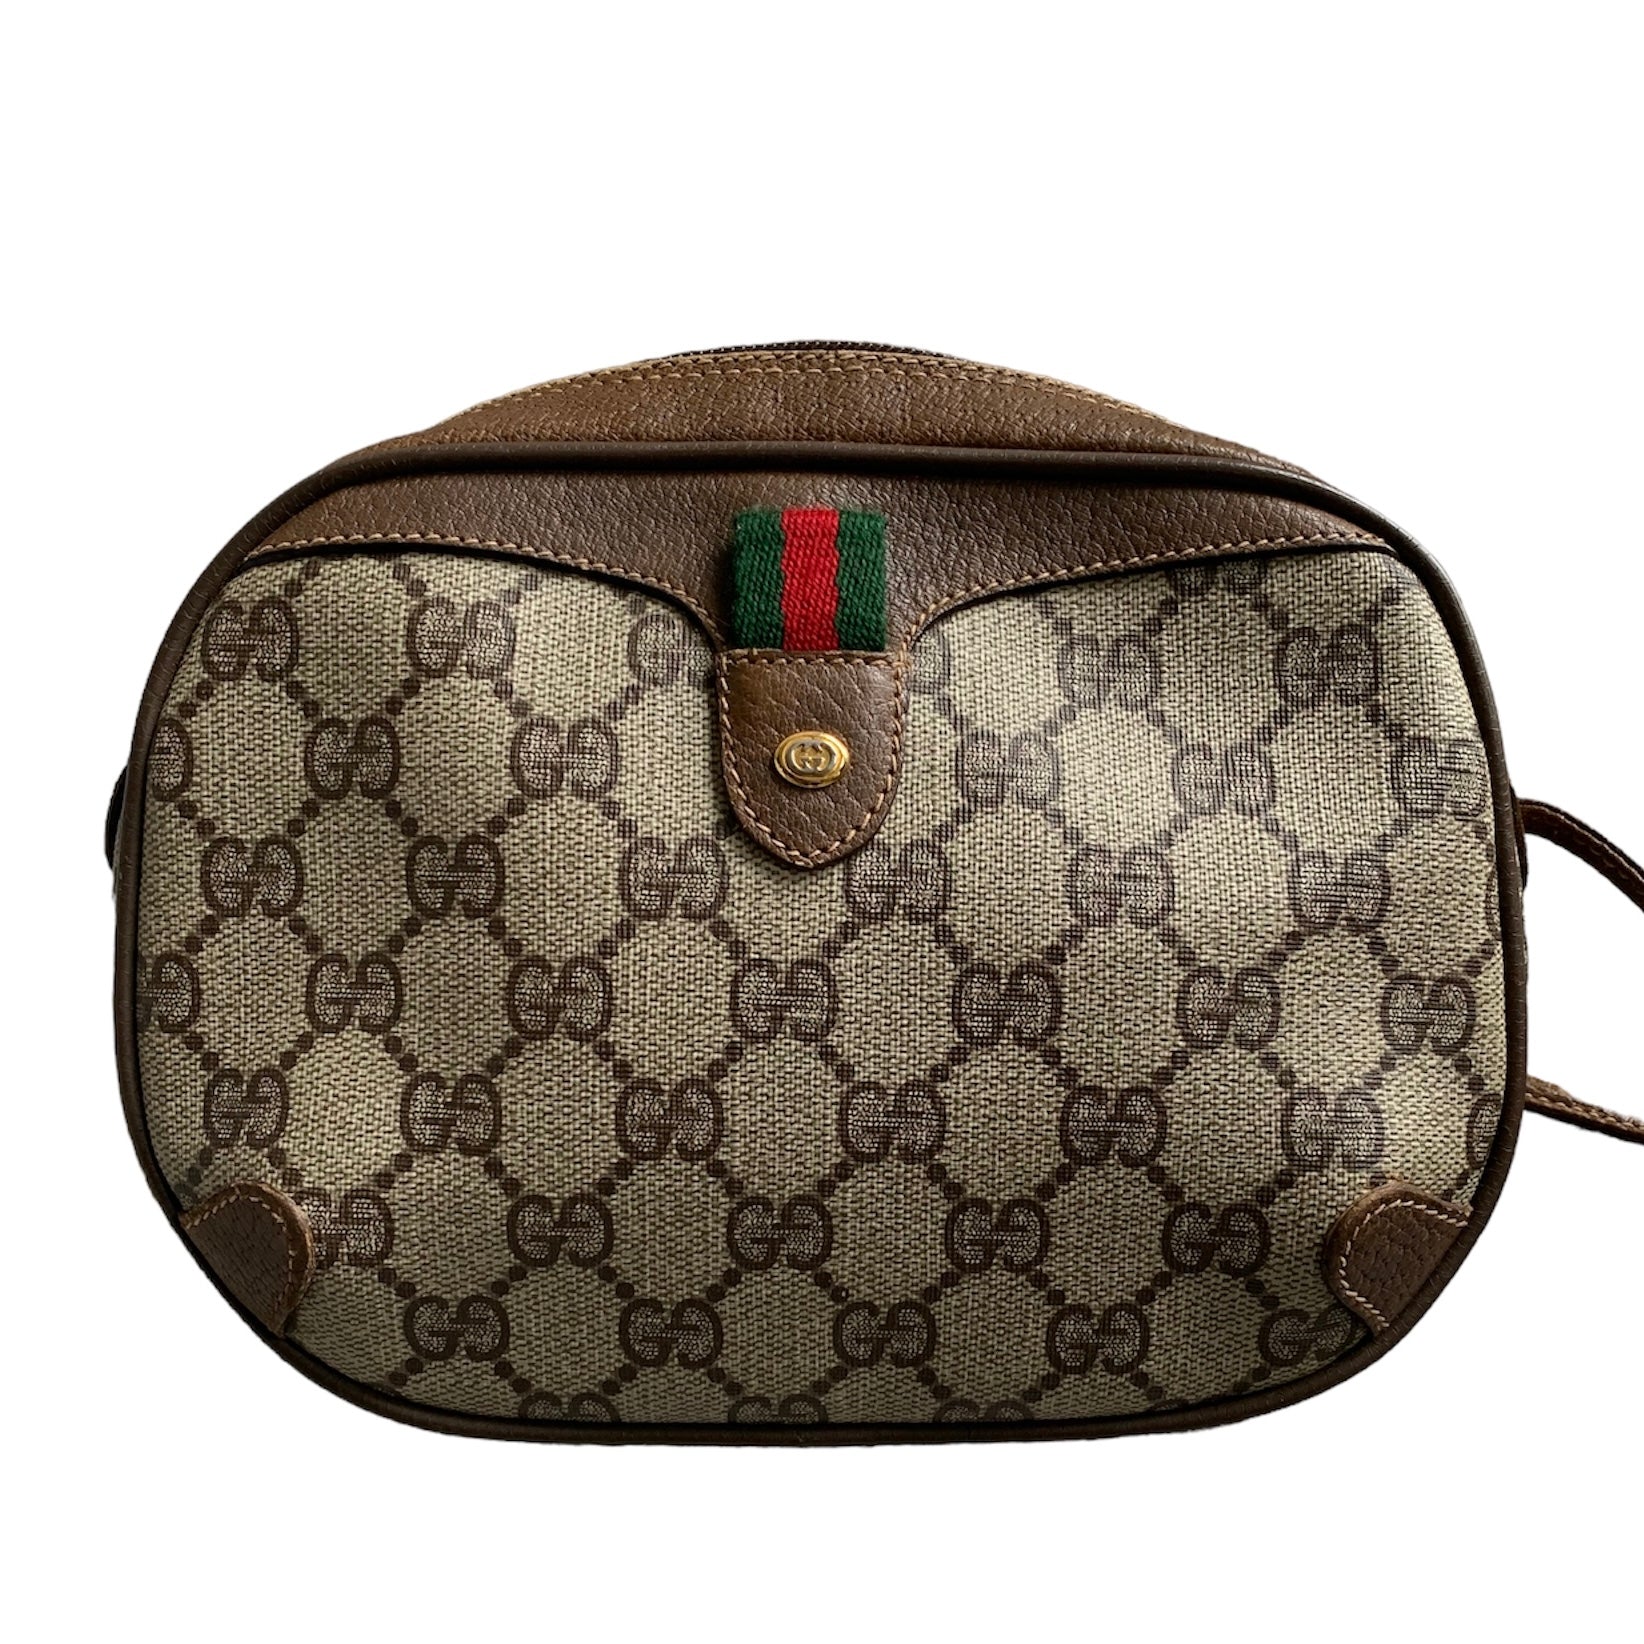 Gucci Pre-Owned GG Supreme Crossbody Bag - Farfetch